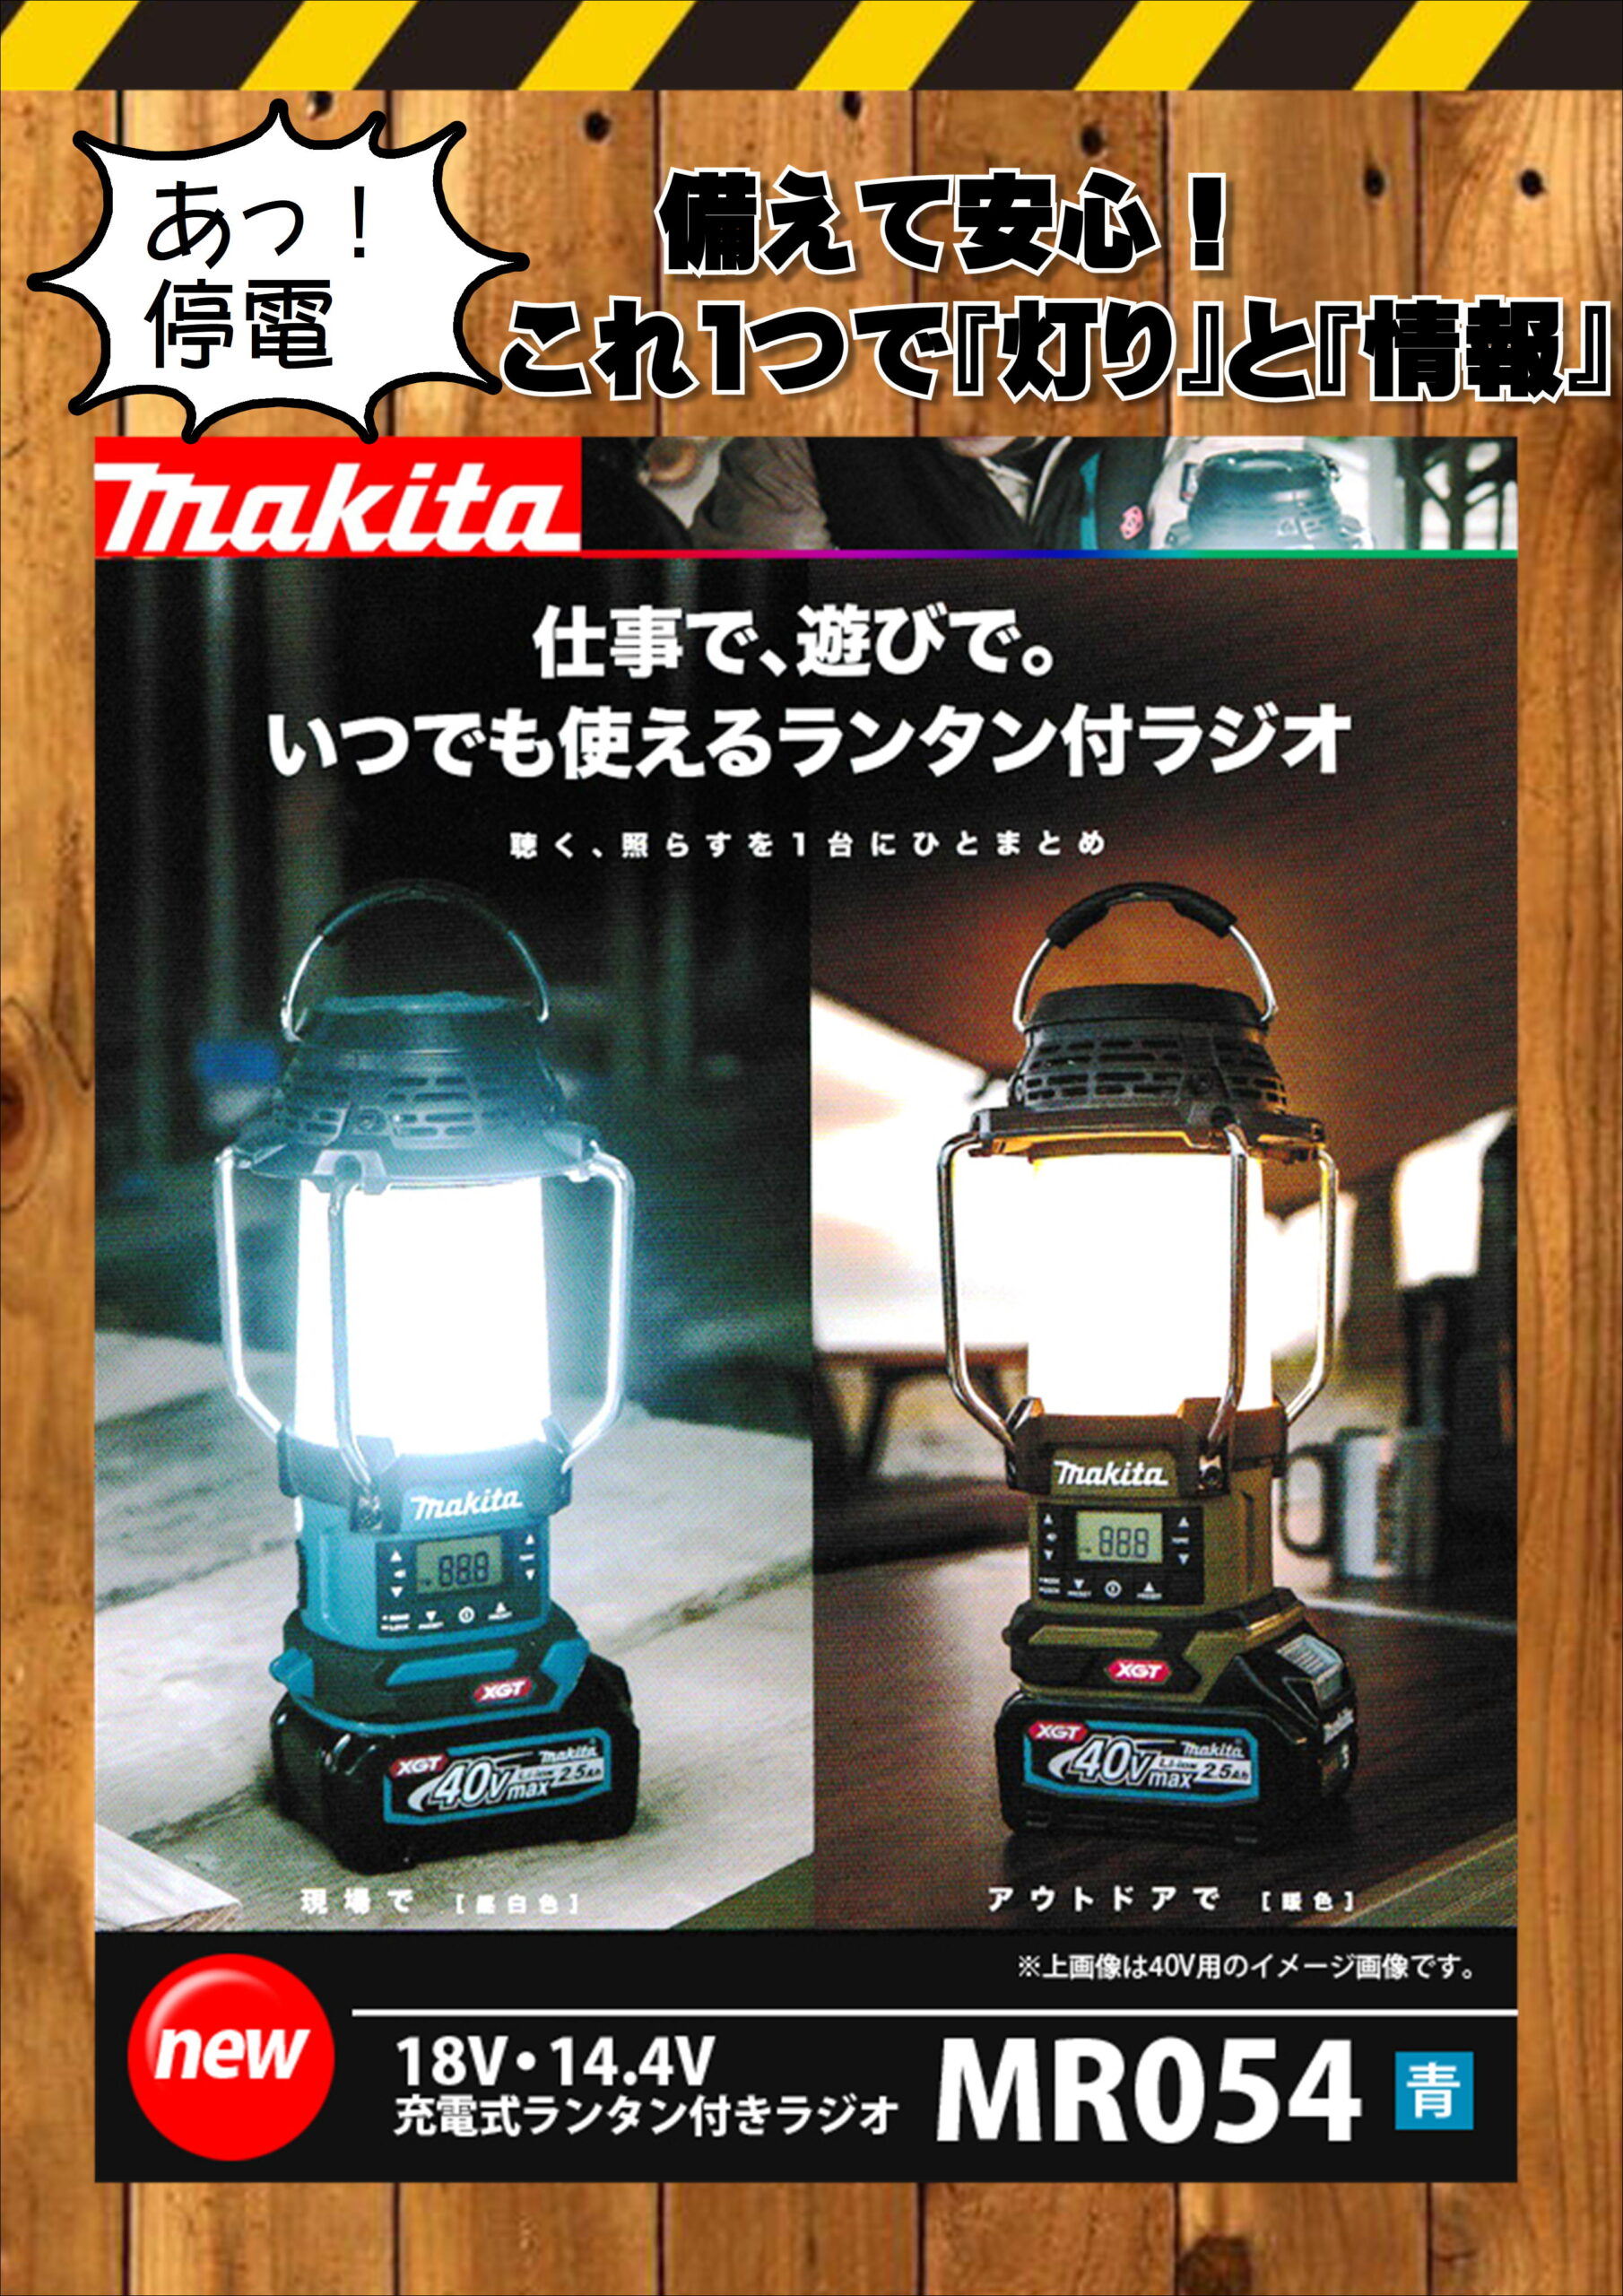 マキタ 18V/14.4V 充電式ランタン付ラジオ(本体のみ) MR054 